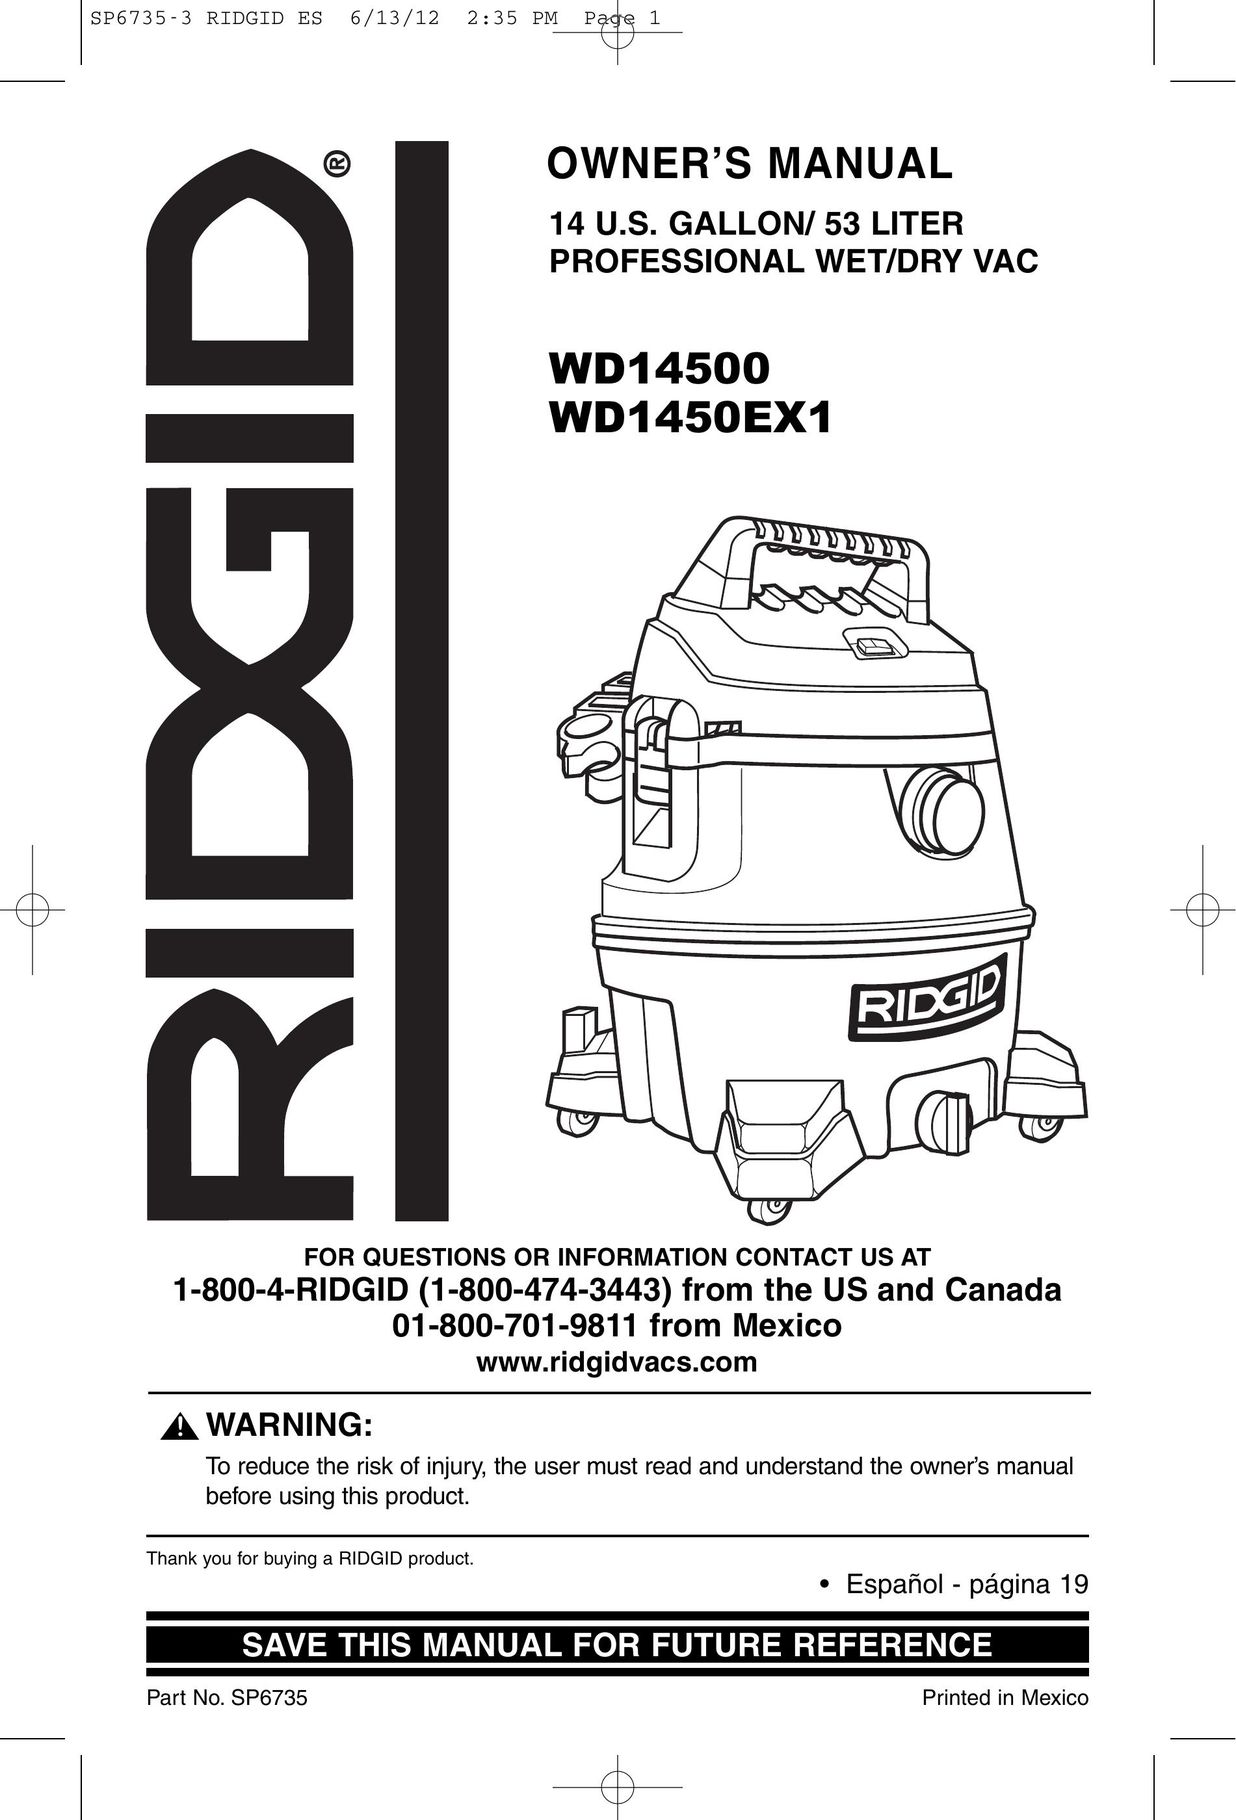 RIDGID WD14500 Vacuum Cleaner User Manual